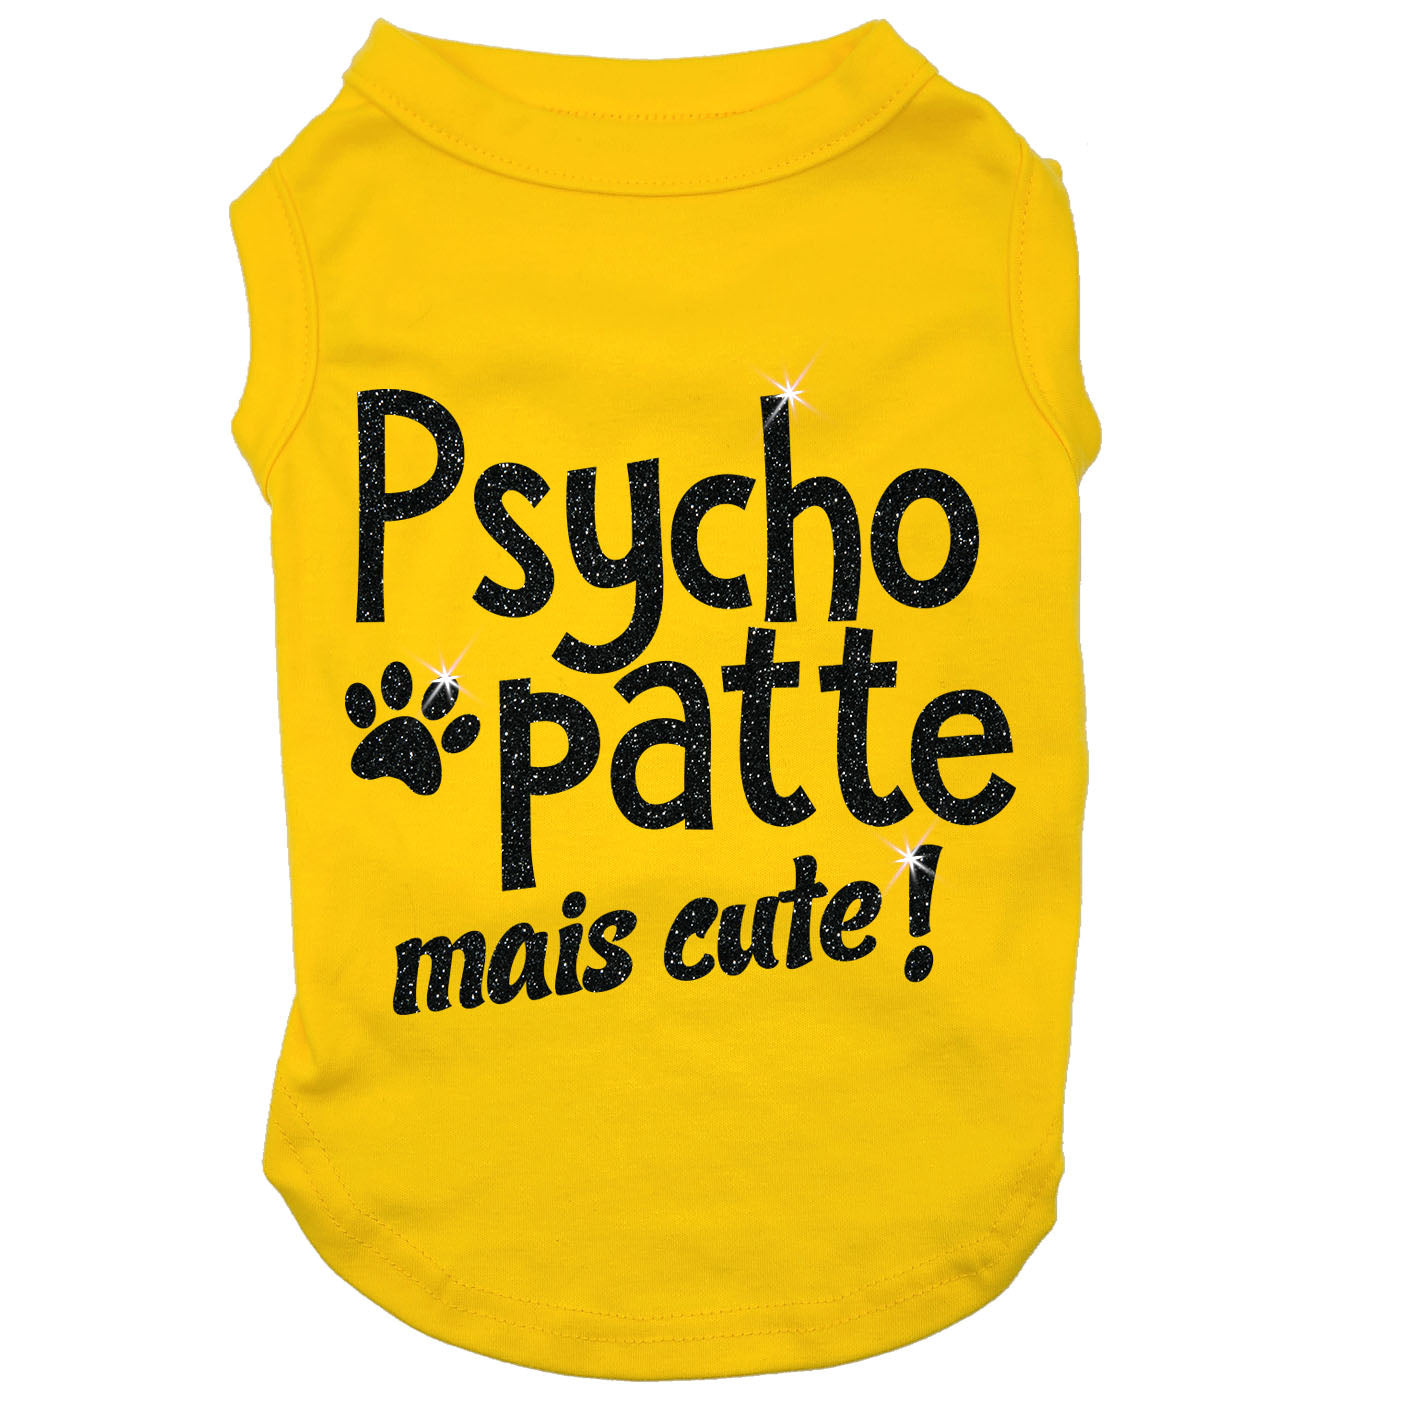 Psycho-patte mais cute, t-shirt pour chien